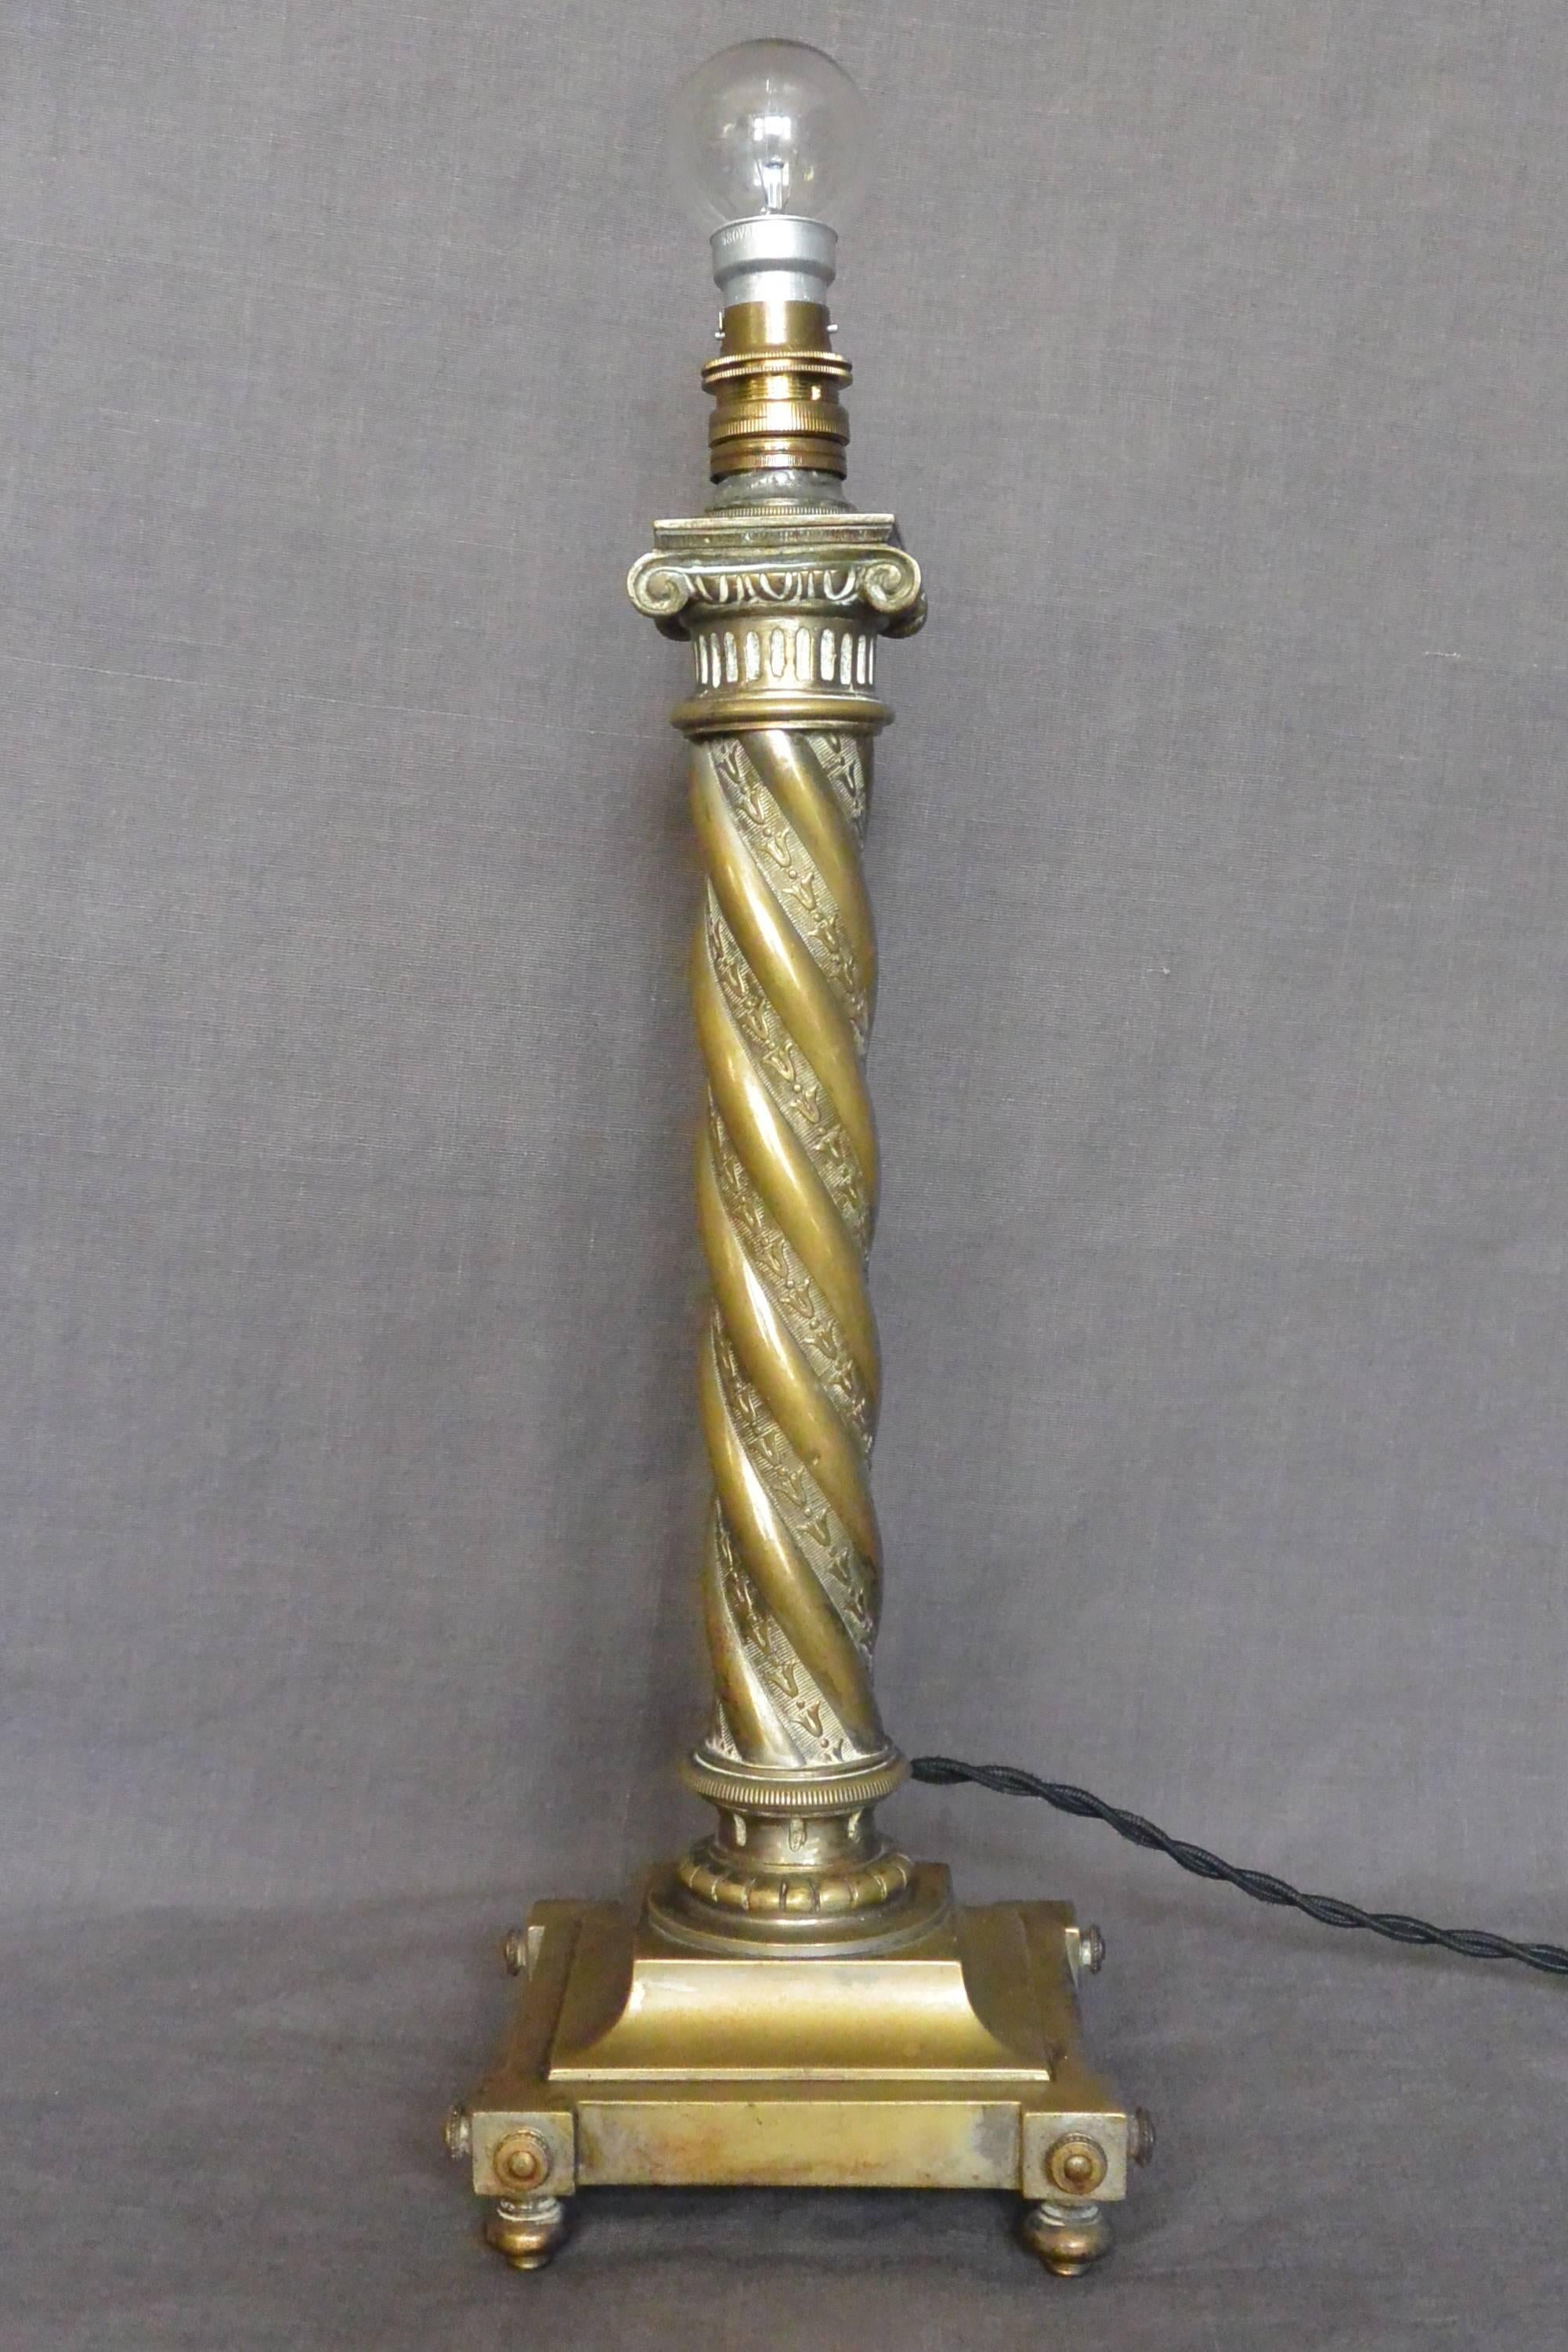 French brass serpentine column lamp.  Napoleon III brass and brass alloy twisted column lamp.  France circa 1870.
Dimensions: 5.75